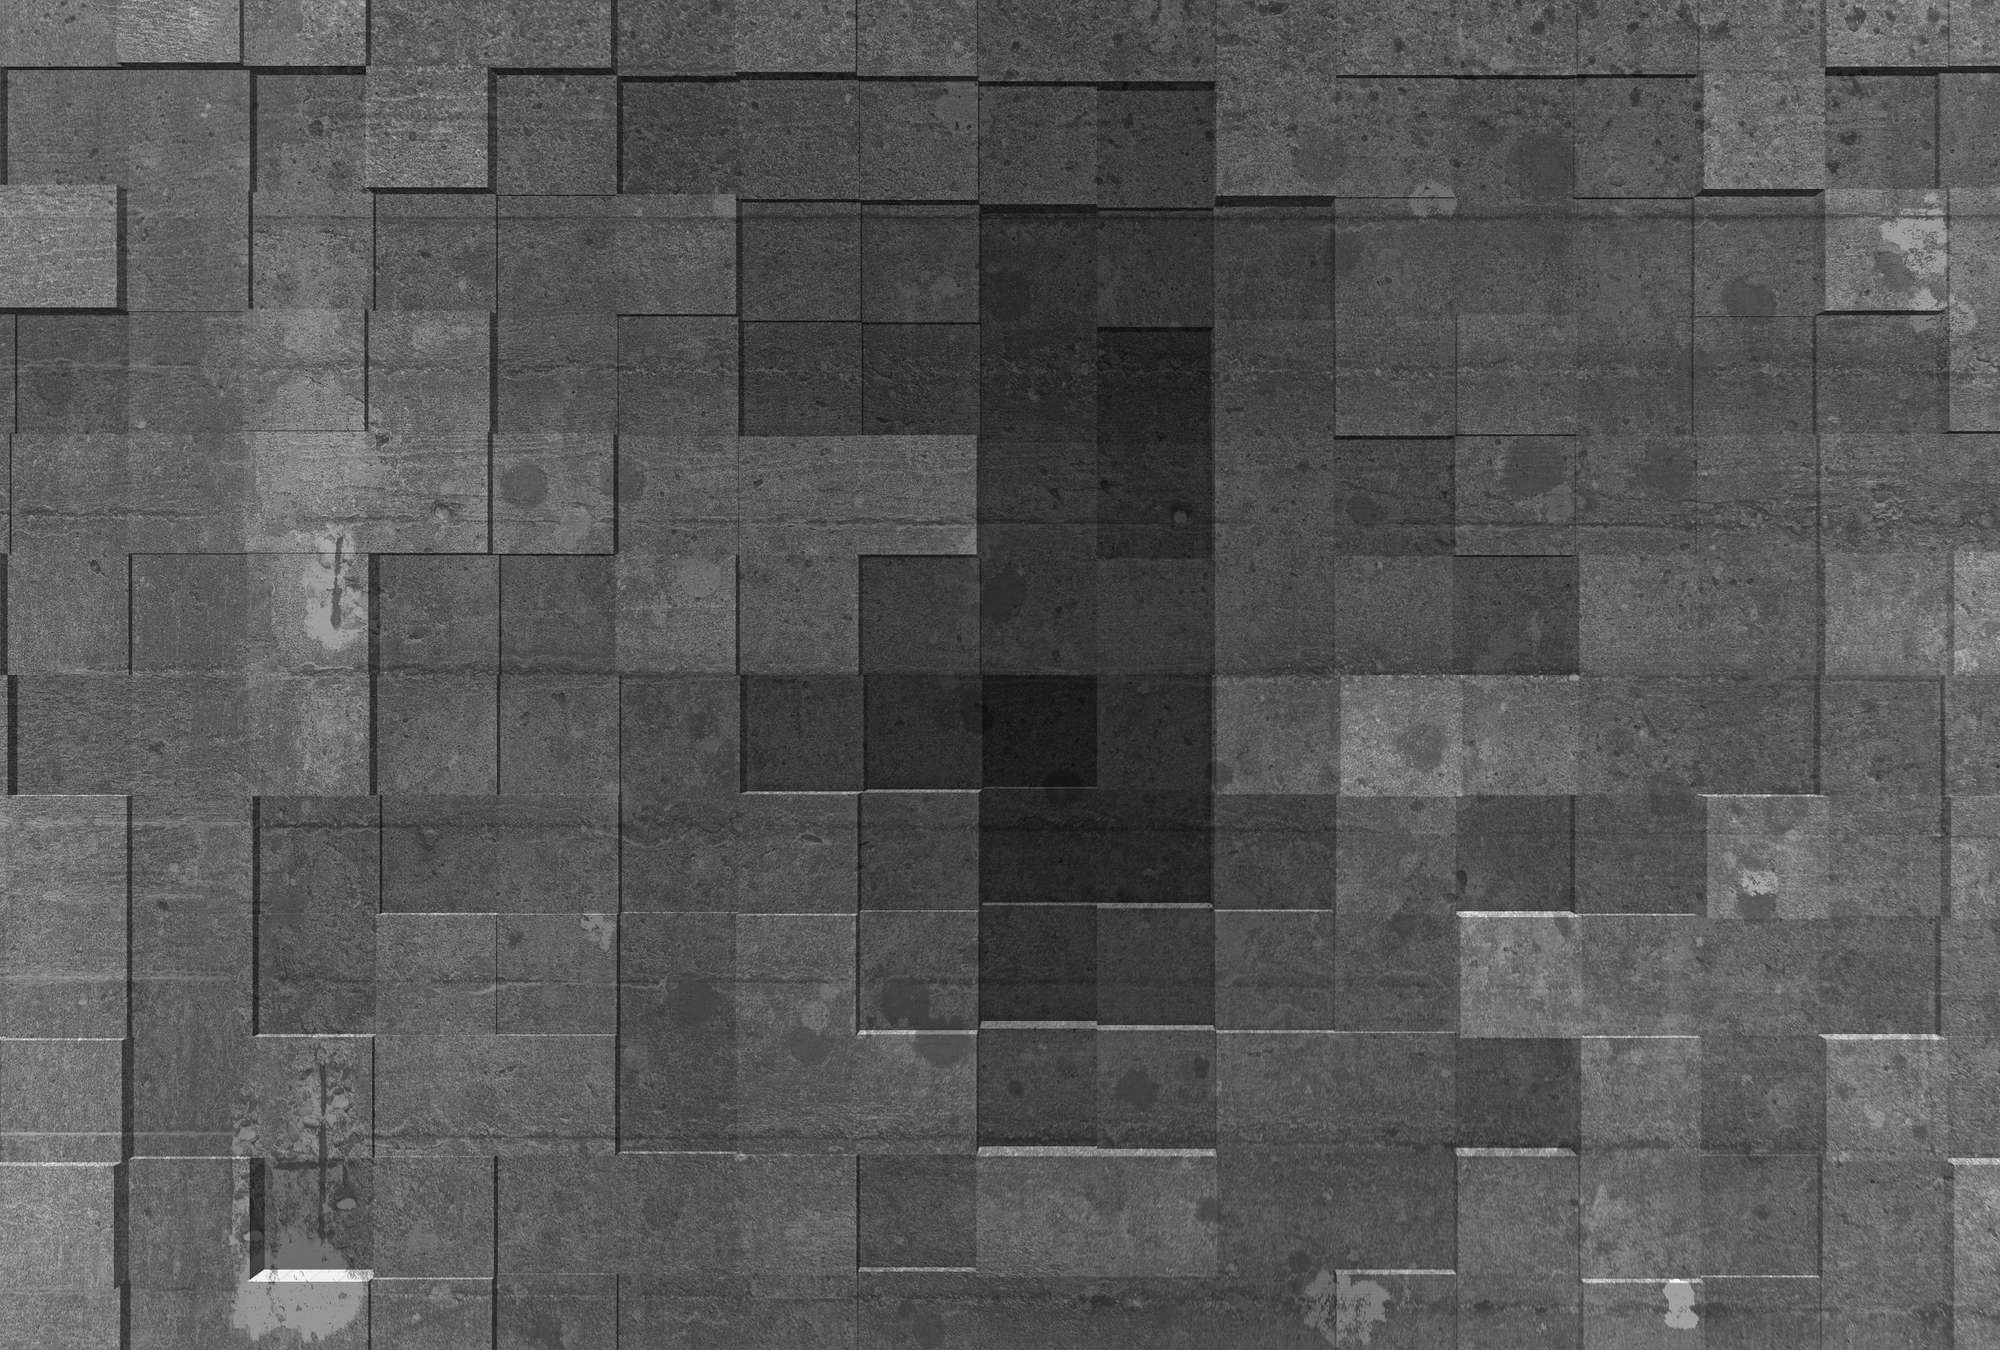             Fototapete dunkelgrau mit Betonoptik & 3D-Effekt – Grau, Schwarz
        